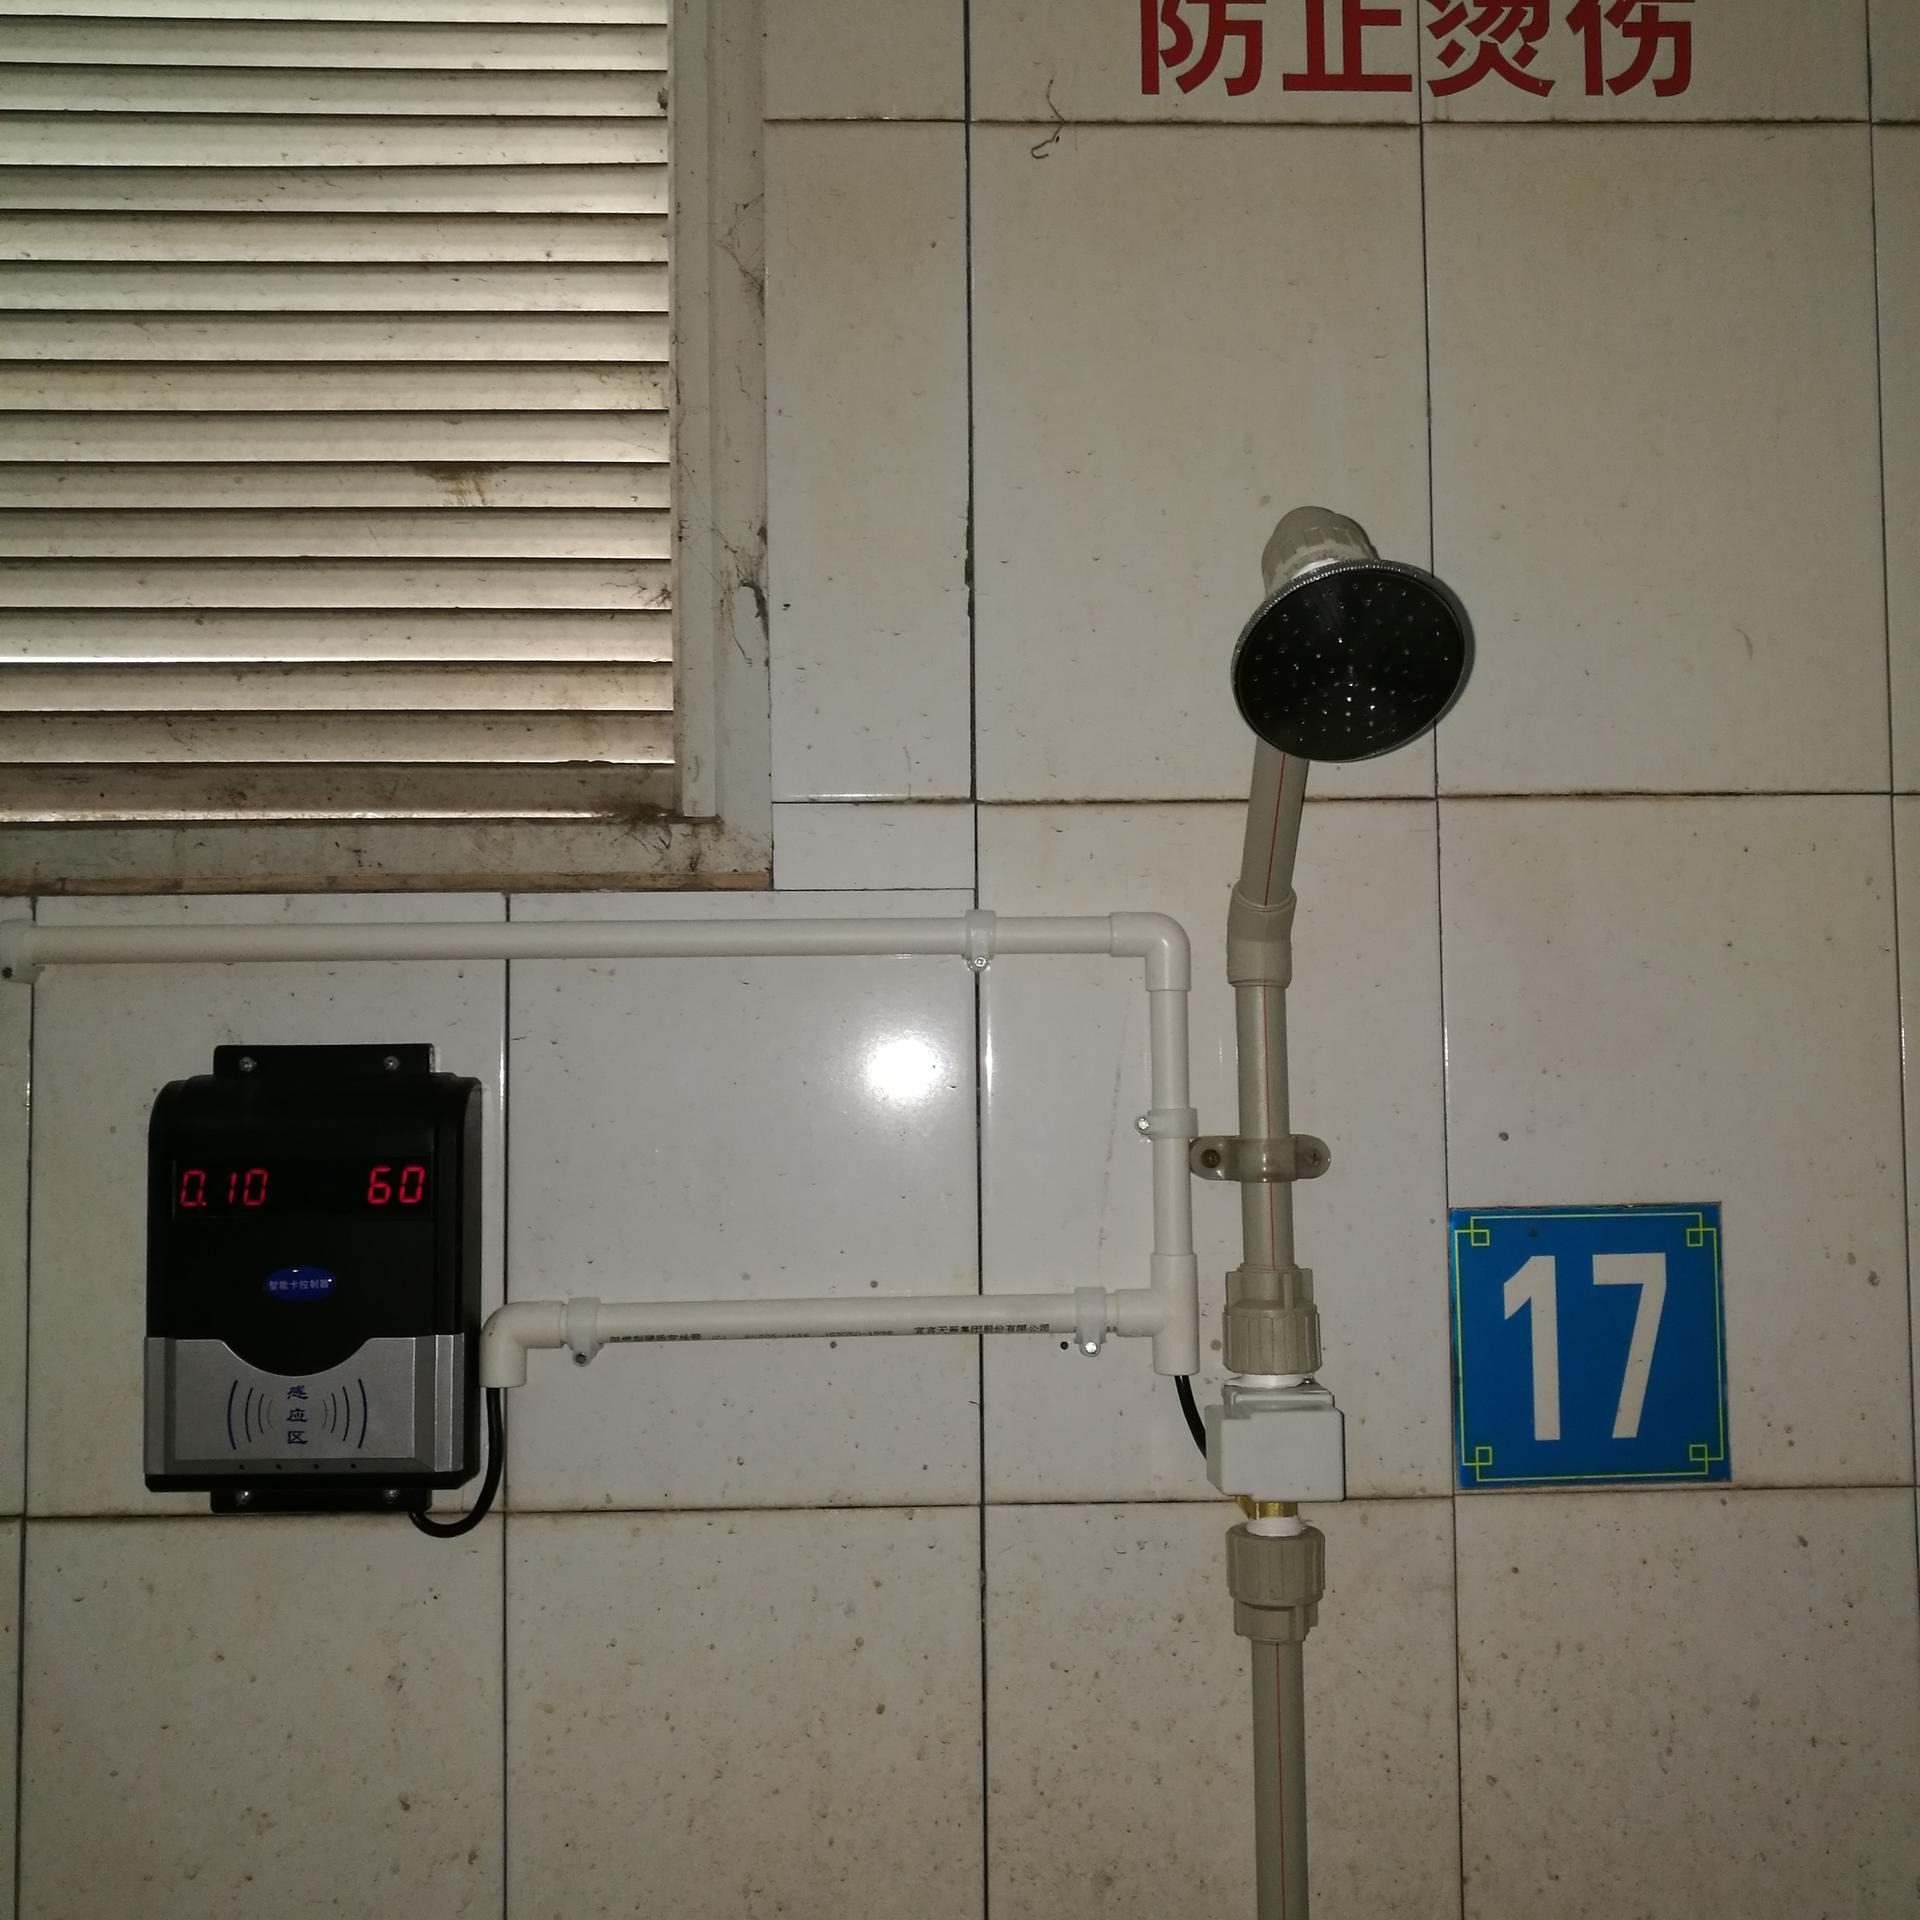 兴天下HF-660公寓刷卡水控系统 IC卡节水计费器 淋浴水控系统